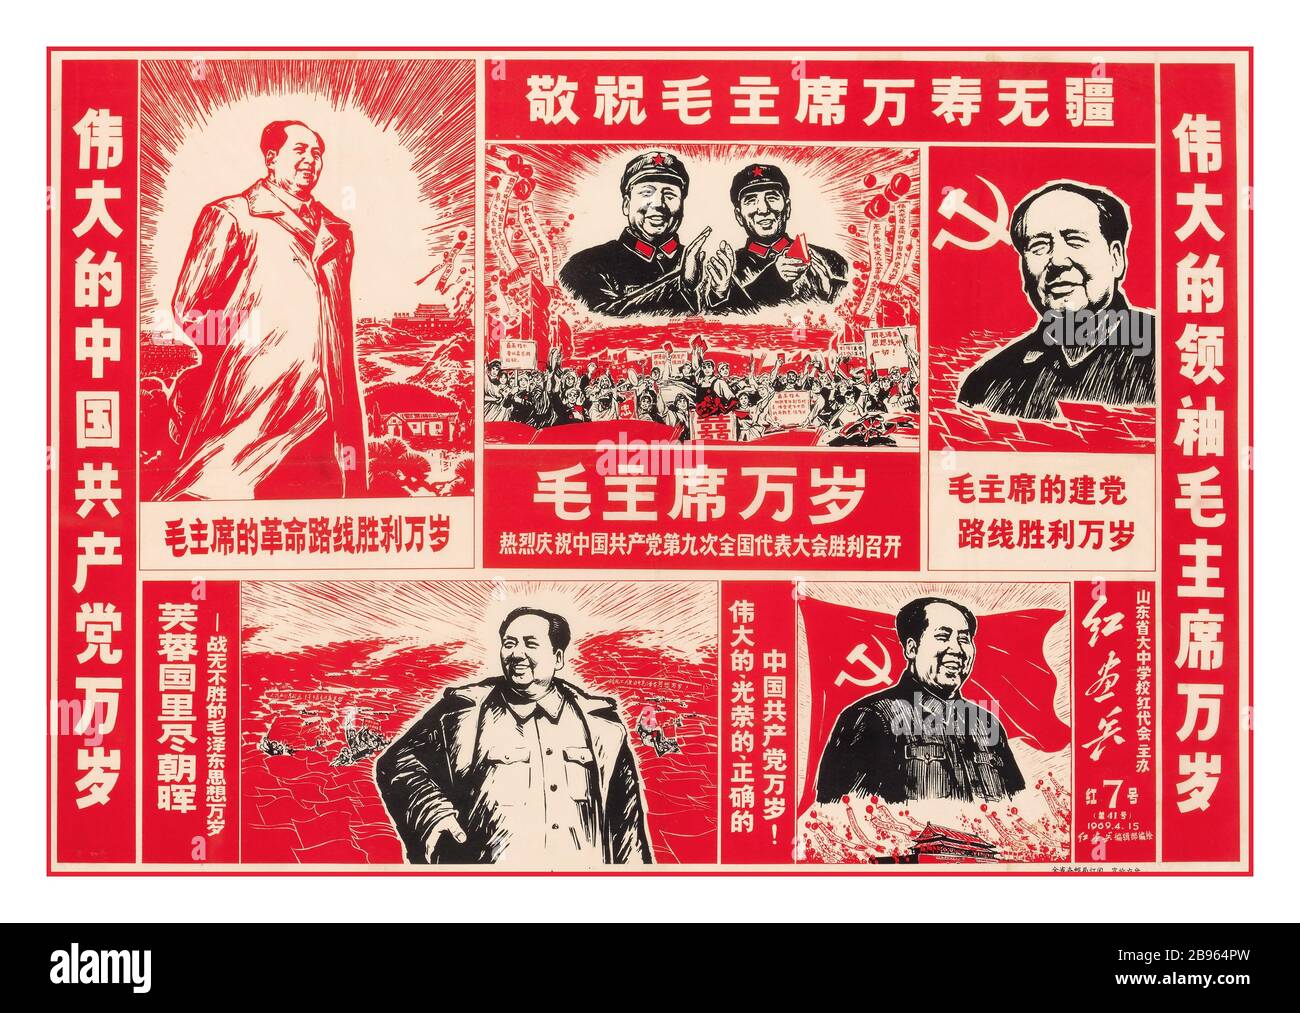 Le PRÉSIDENT MAO Vintage 1960 affiche de la propagande chinoise avec le président Mao dans diverses formes comme chef, y compris avec le drapeau de marteau et de faucille de l'Union soviétique Banque D'Images